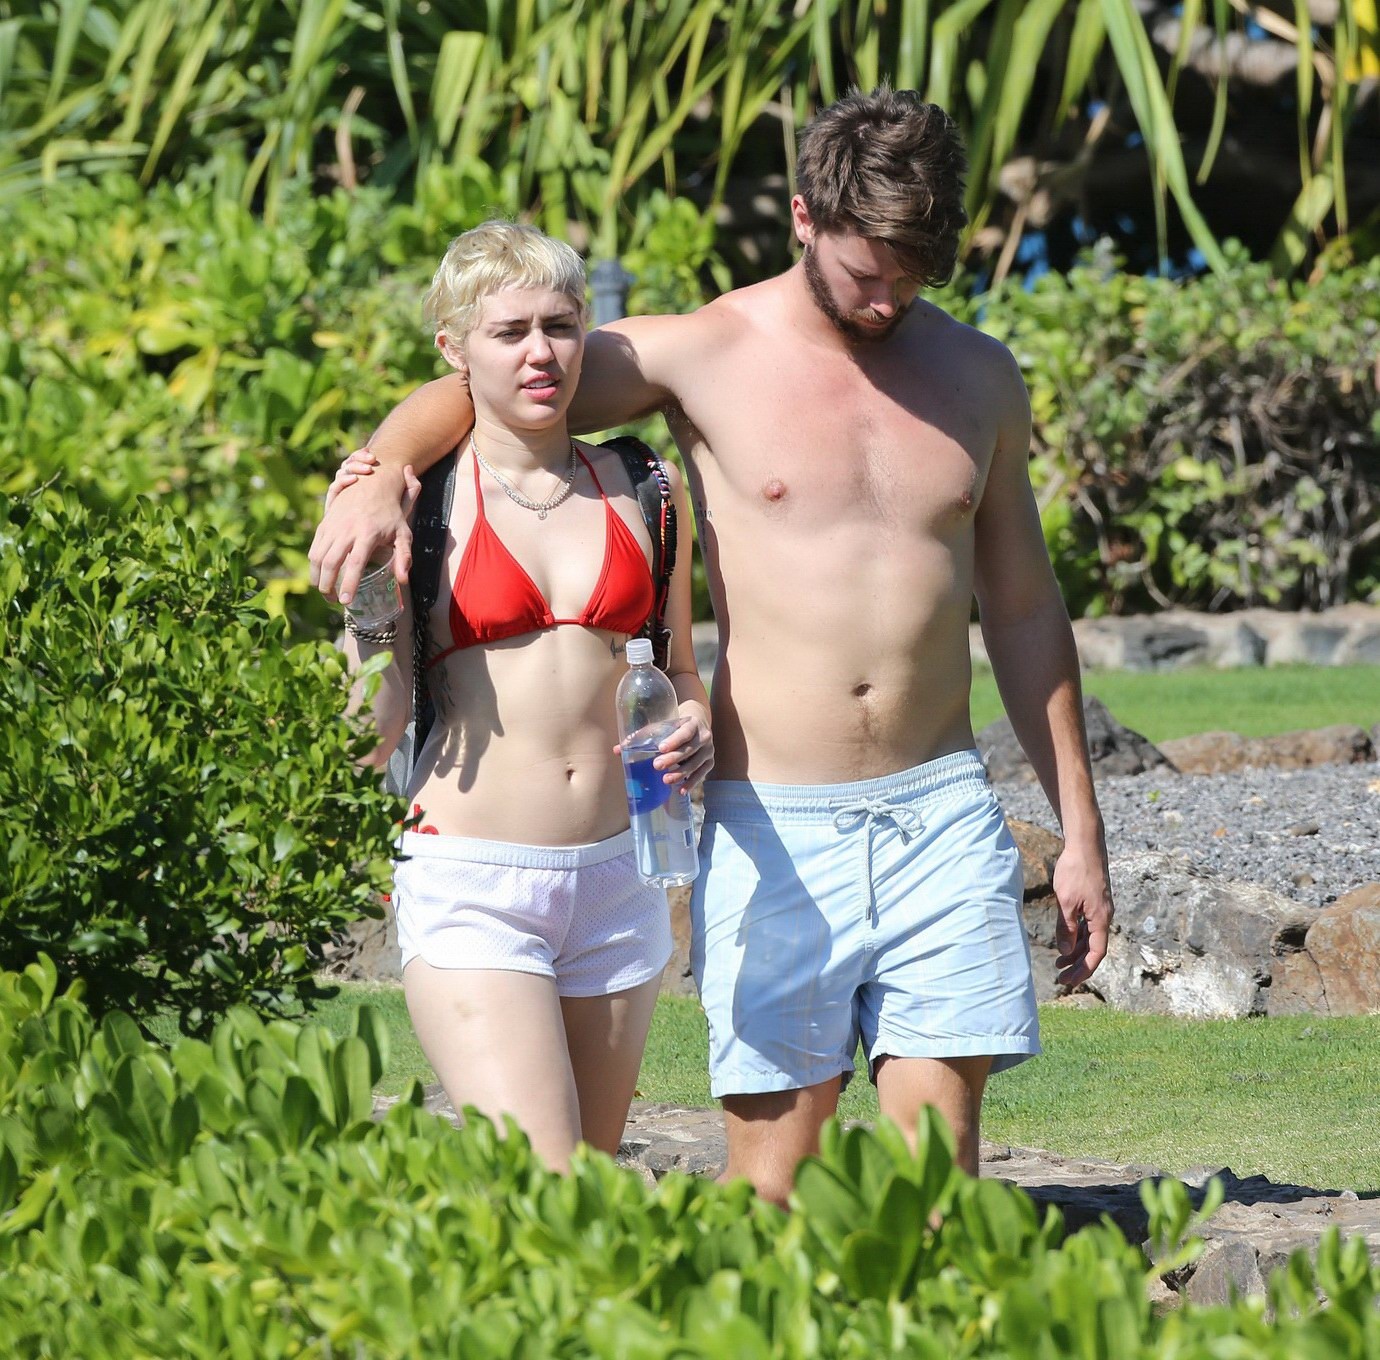 Miley cyrus con un diminuto bikini rojo y unos shorts transparentes en sus vacaciones en hawai
 #75175081